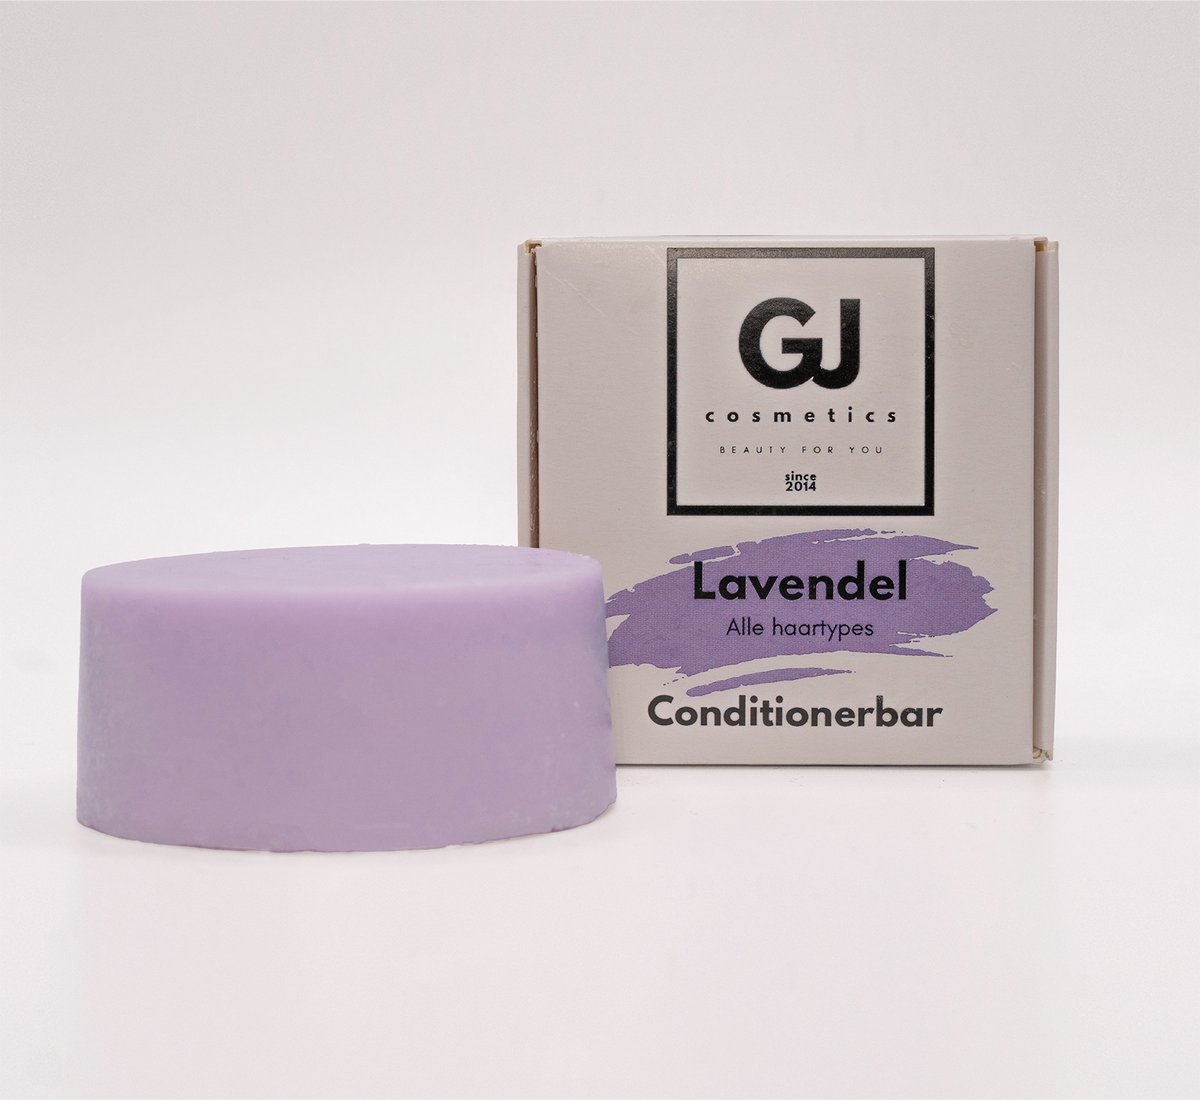 GJ Cosmetics Conditionerbar Lavendel